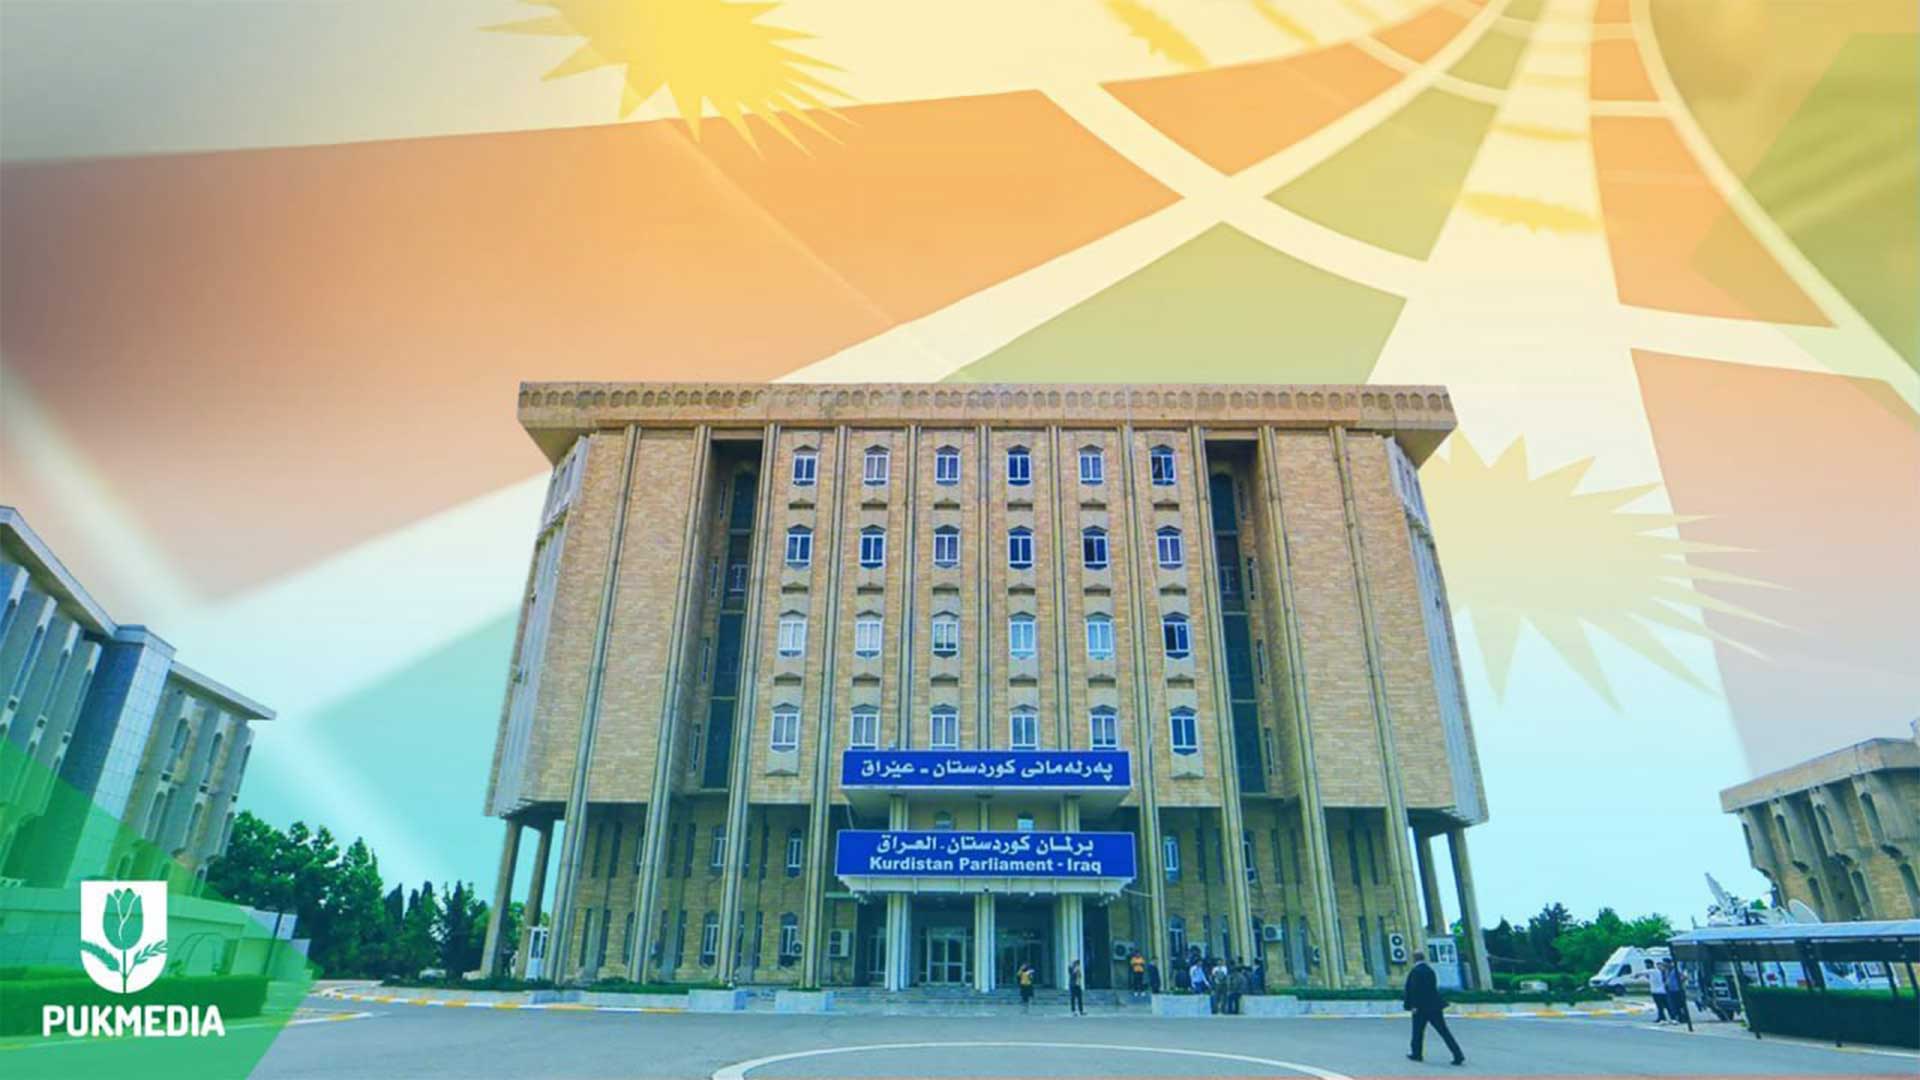  Kurdistan Parliament